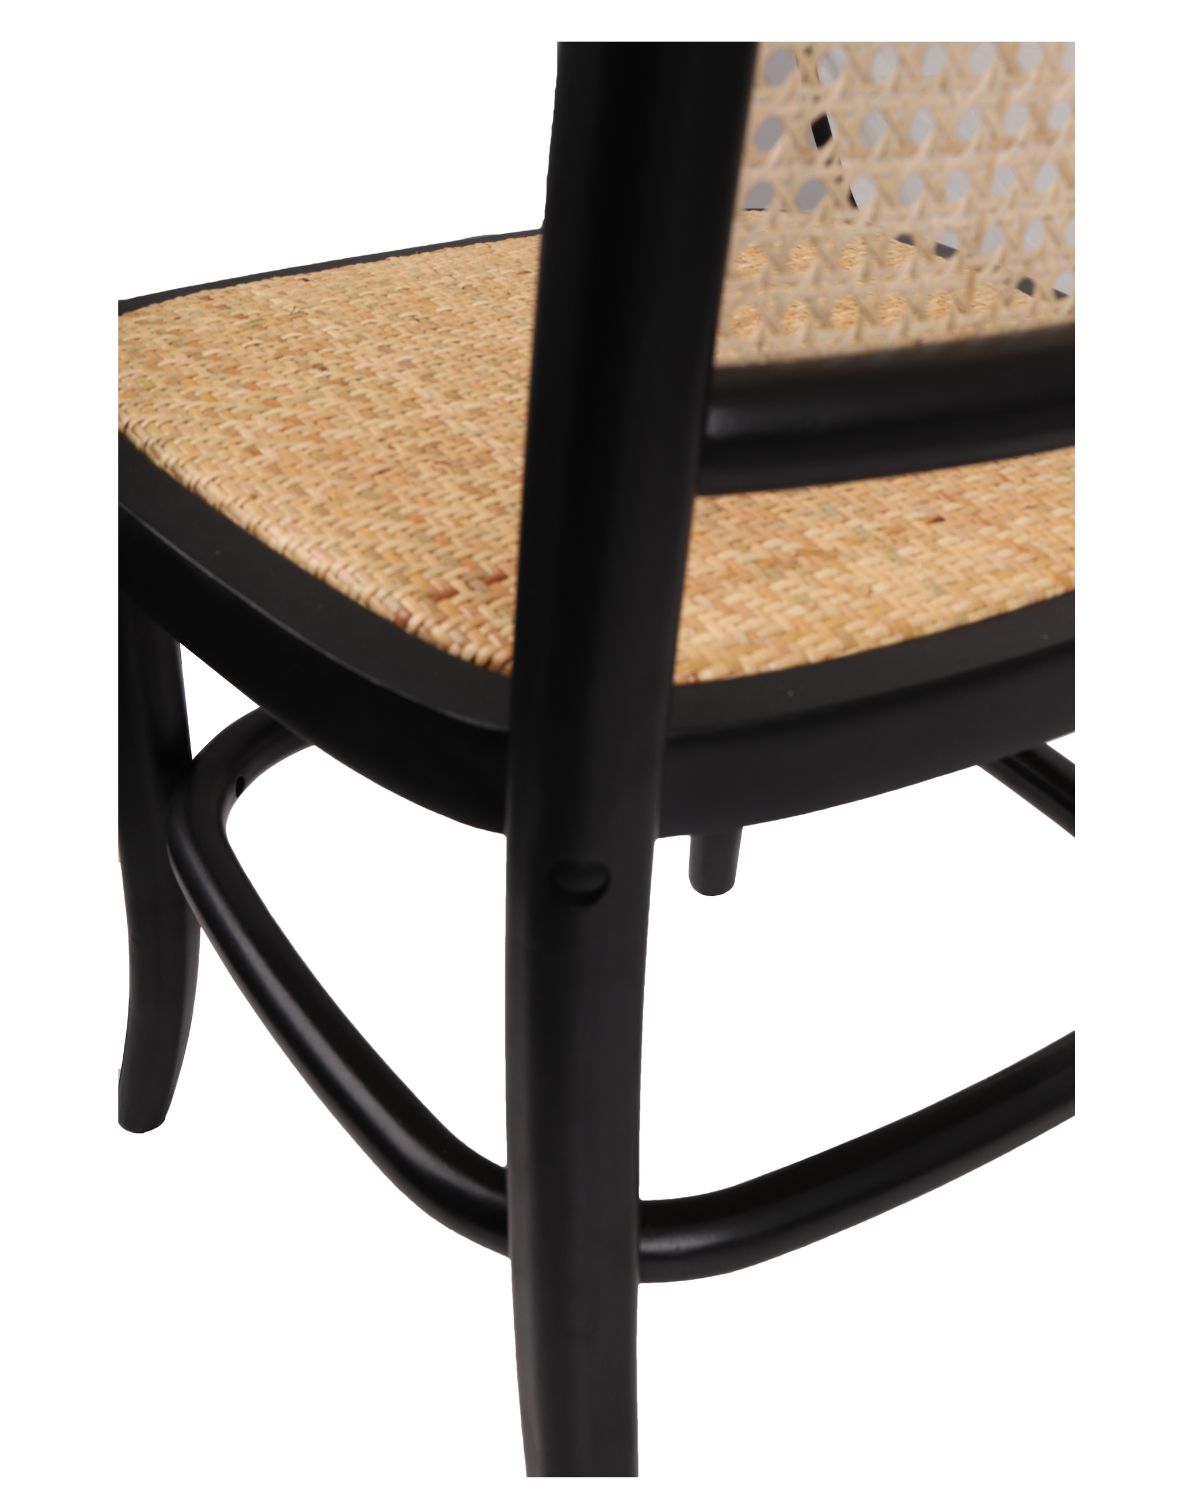 Krzesło drewniane Viki light